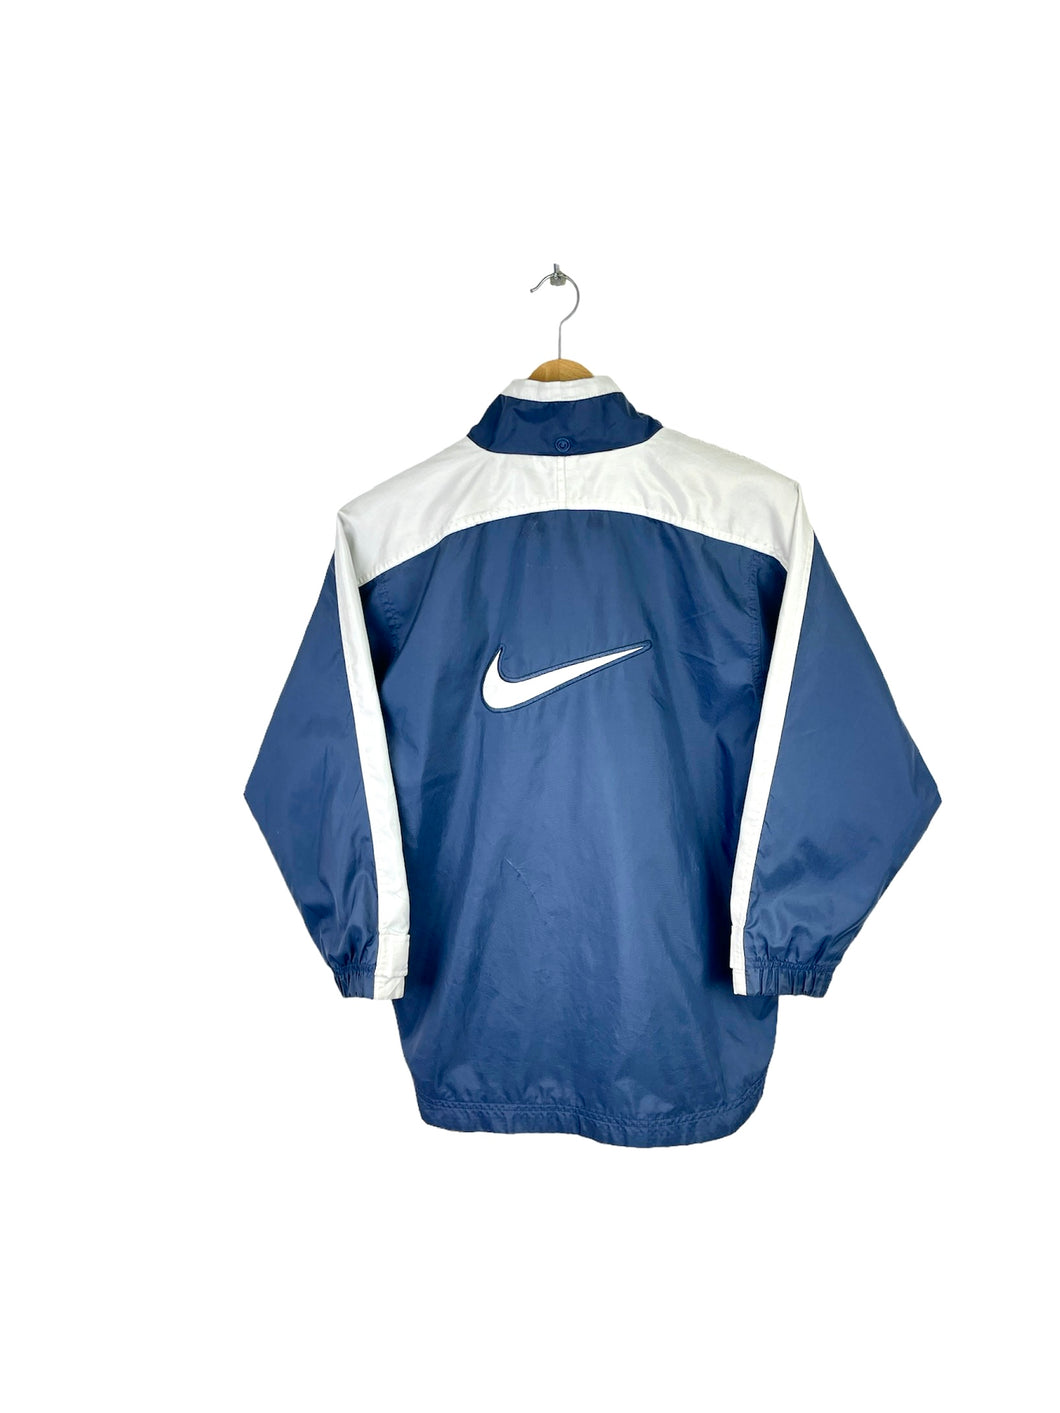 Nike Jacket - XXSmall